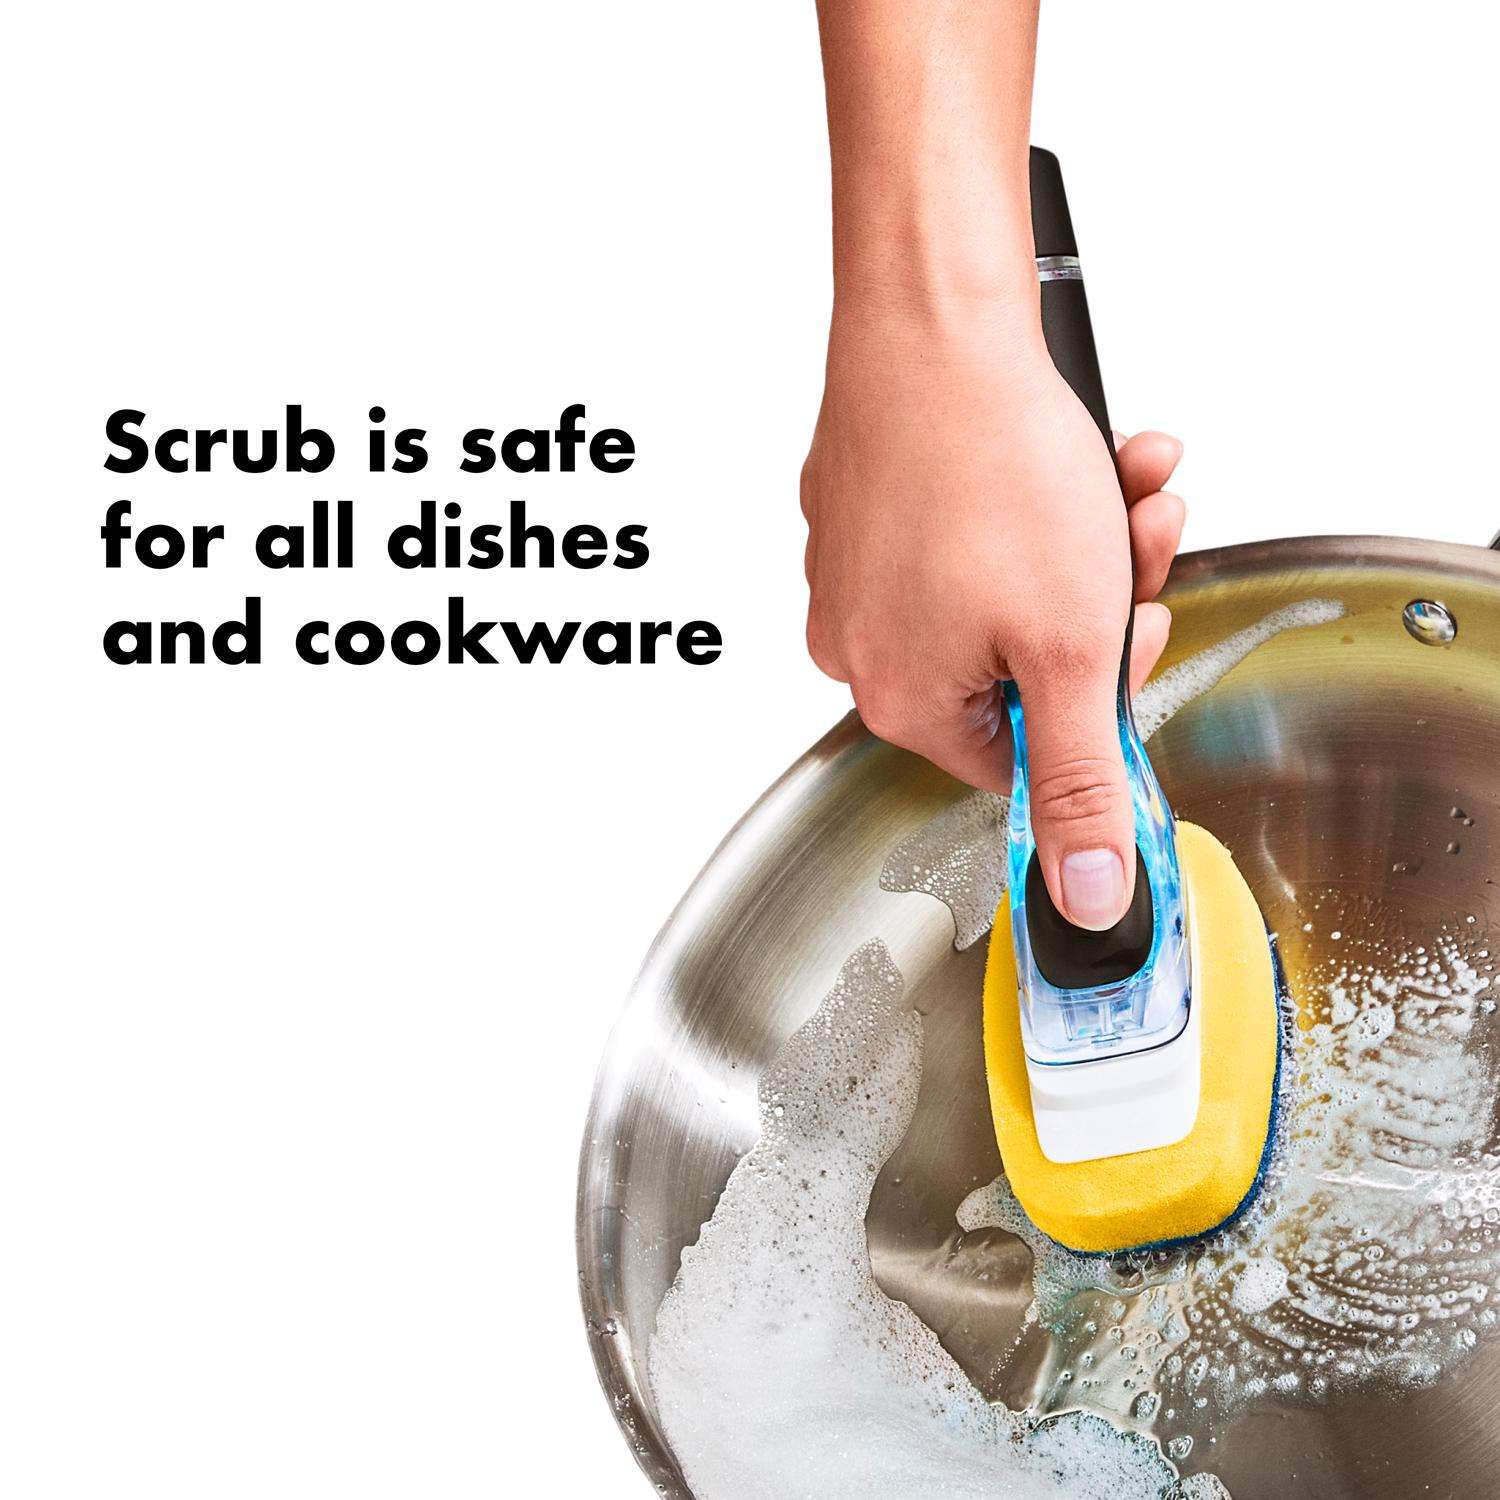  OXO Good Grips Soap Dispensing Dish Brush Refills, 2 Pack,  White, Nylon Bristles : Health & Household